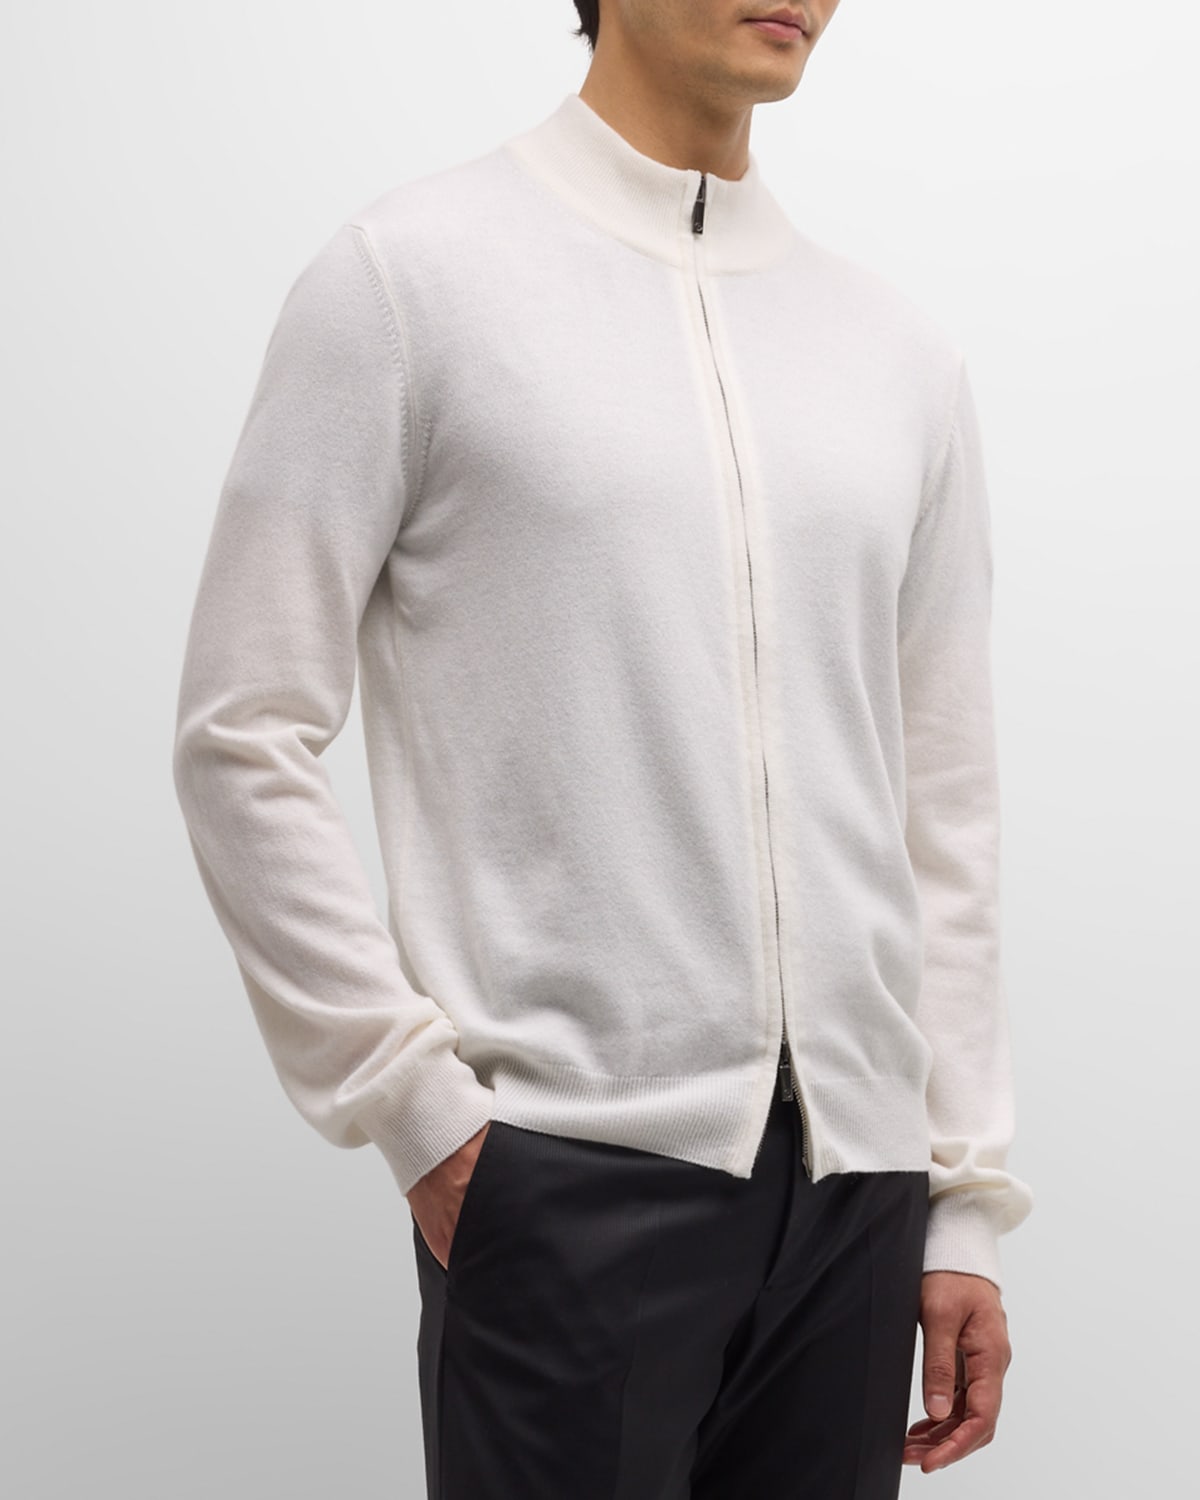 Giorgio Armani Men's Full-zip Cashmere Cardigan In Off White